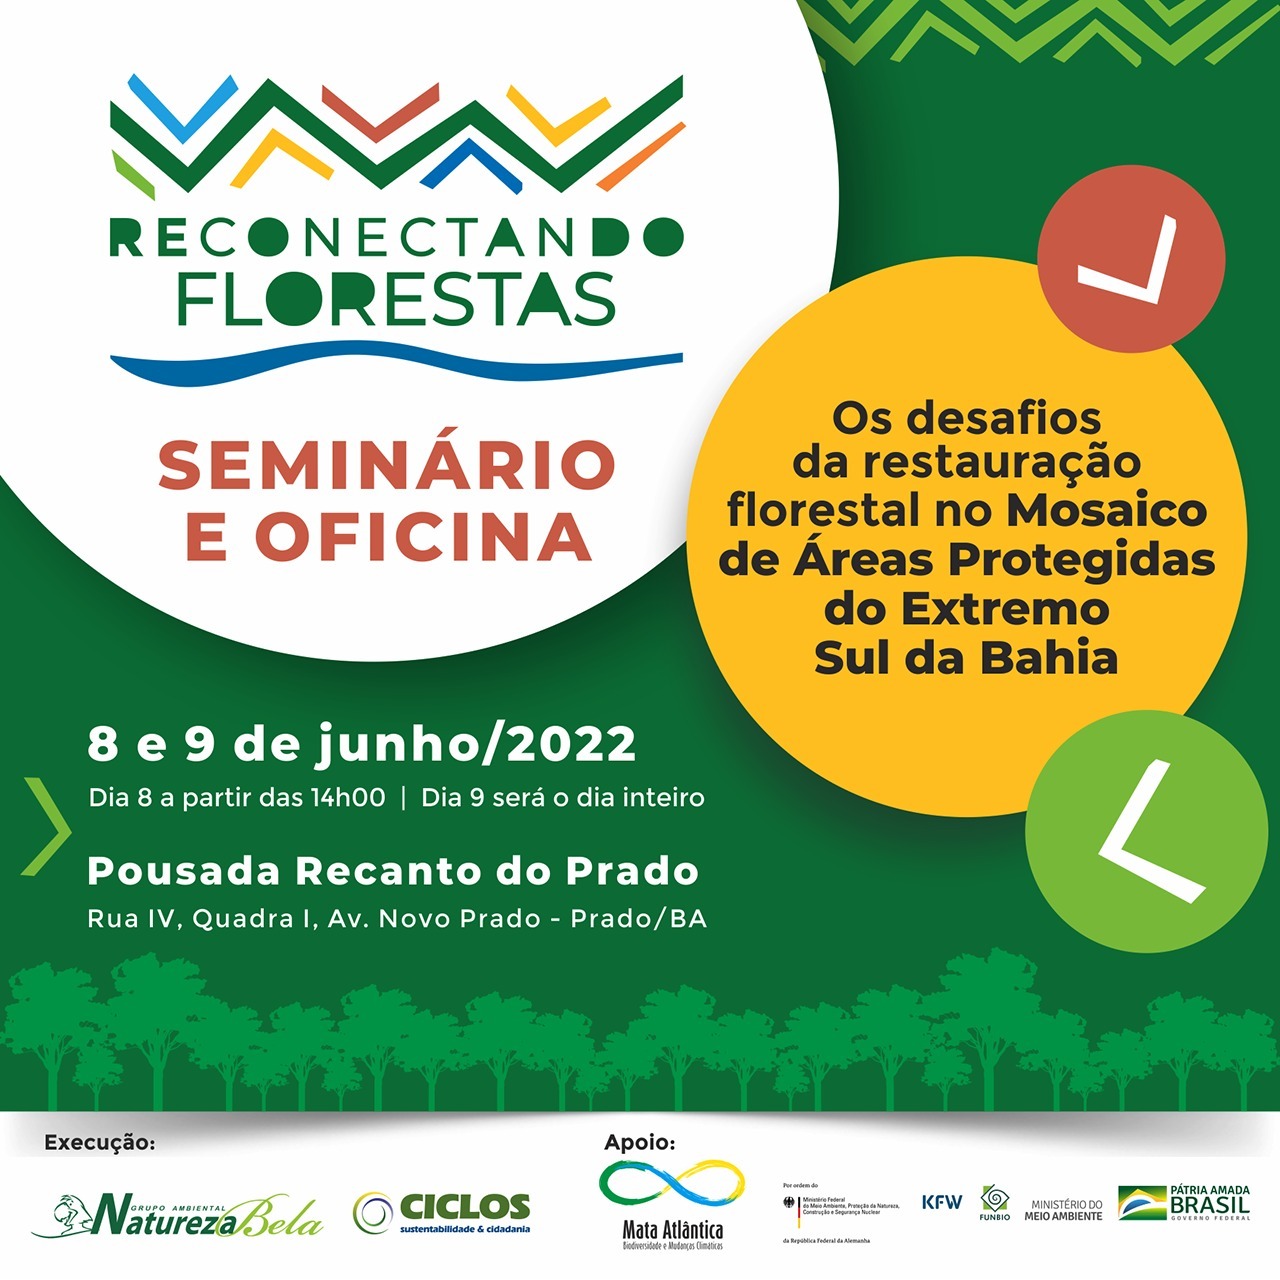 Seminário “Reconectando Florestas” – Desafios e oportunidades para ampliar a escala da restauração florestal no Extremo Sul da Bahia contará com debate sobre os PMMAs